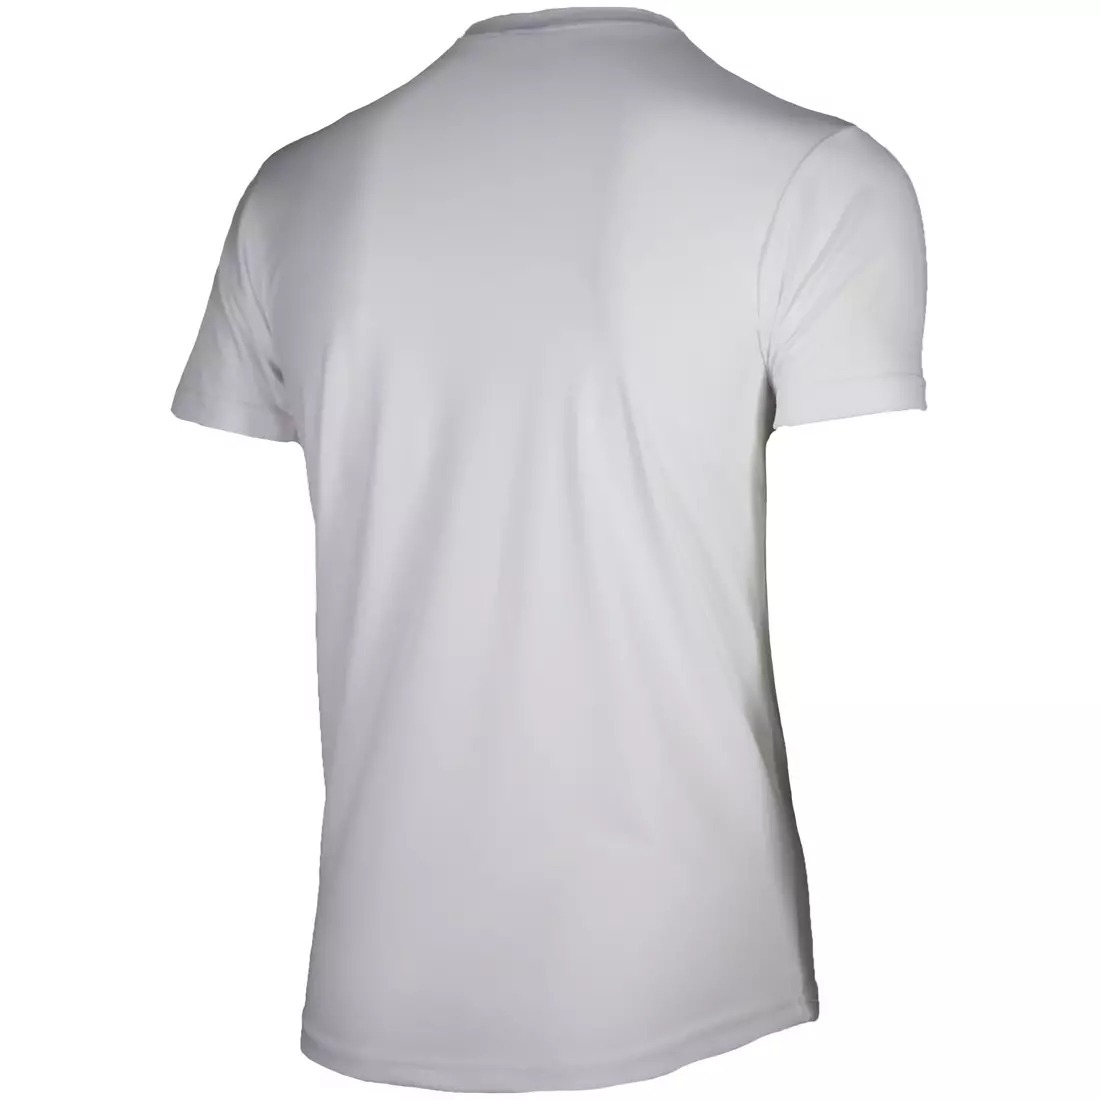 ROGELLI RUN PROMOTION pánska športová košeľa s krátkym rukávom, biela